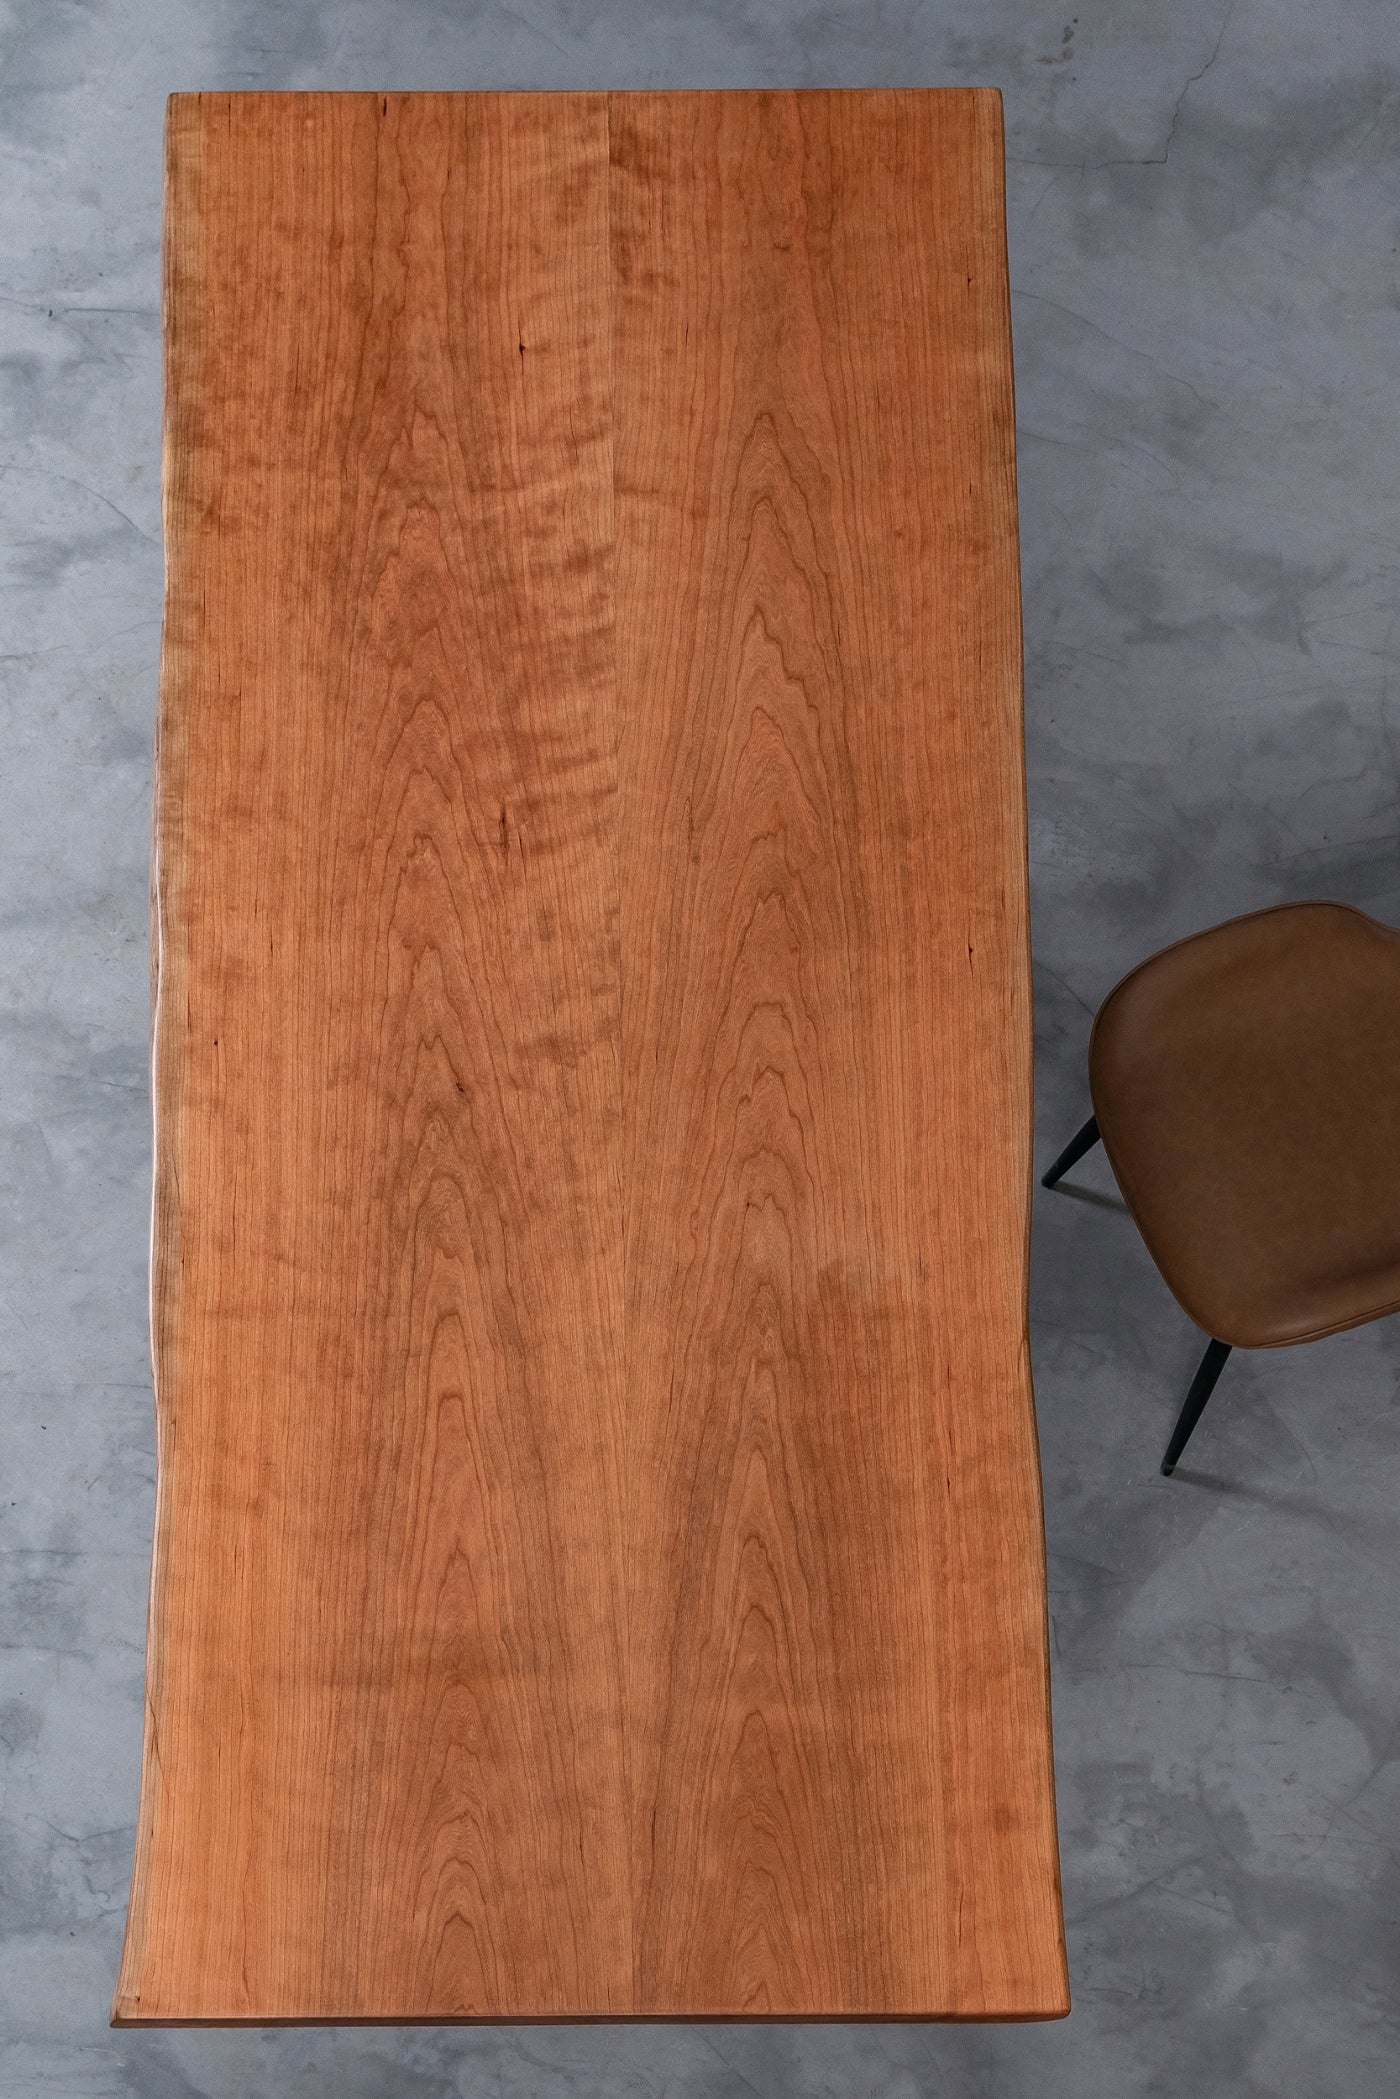 Mesa de losa de madera de cerezo Live Edge única hecha a mano con borde vivo, tablero de mesa de losa de granito